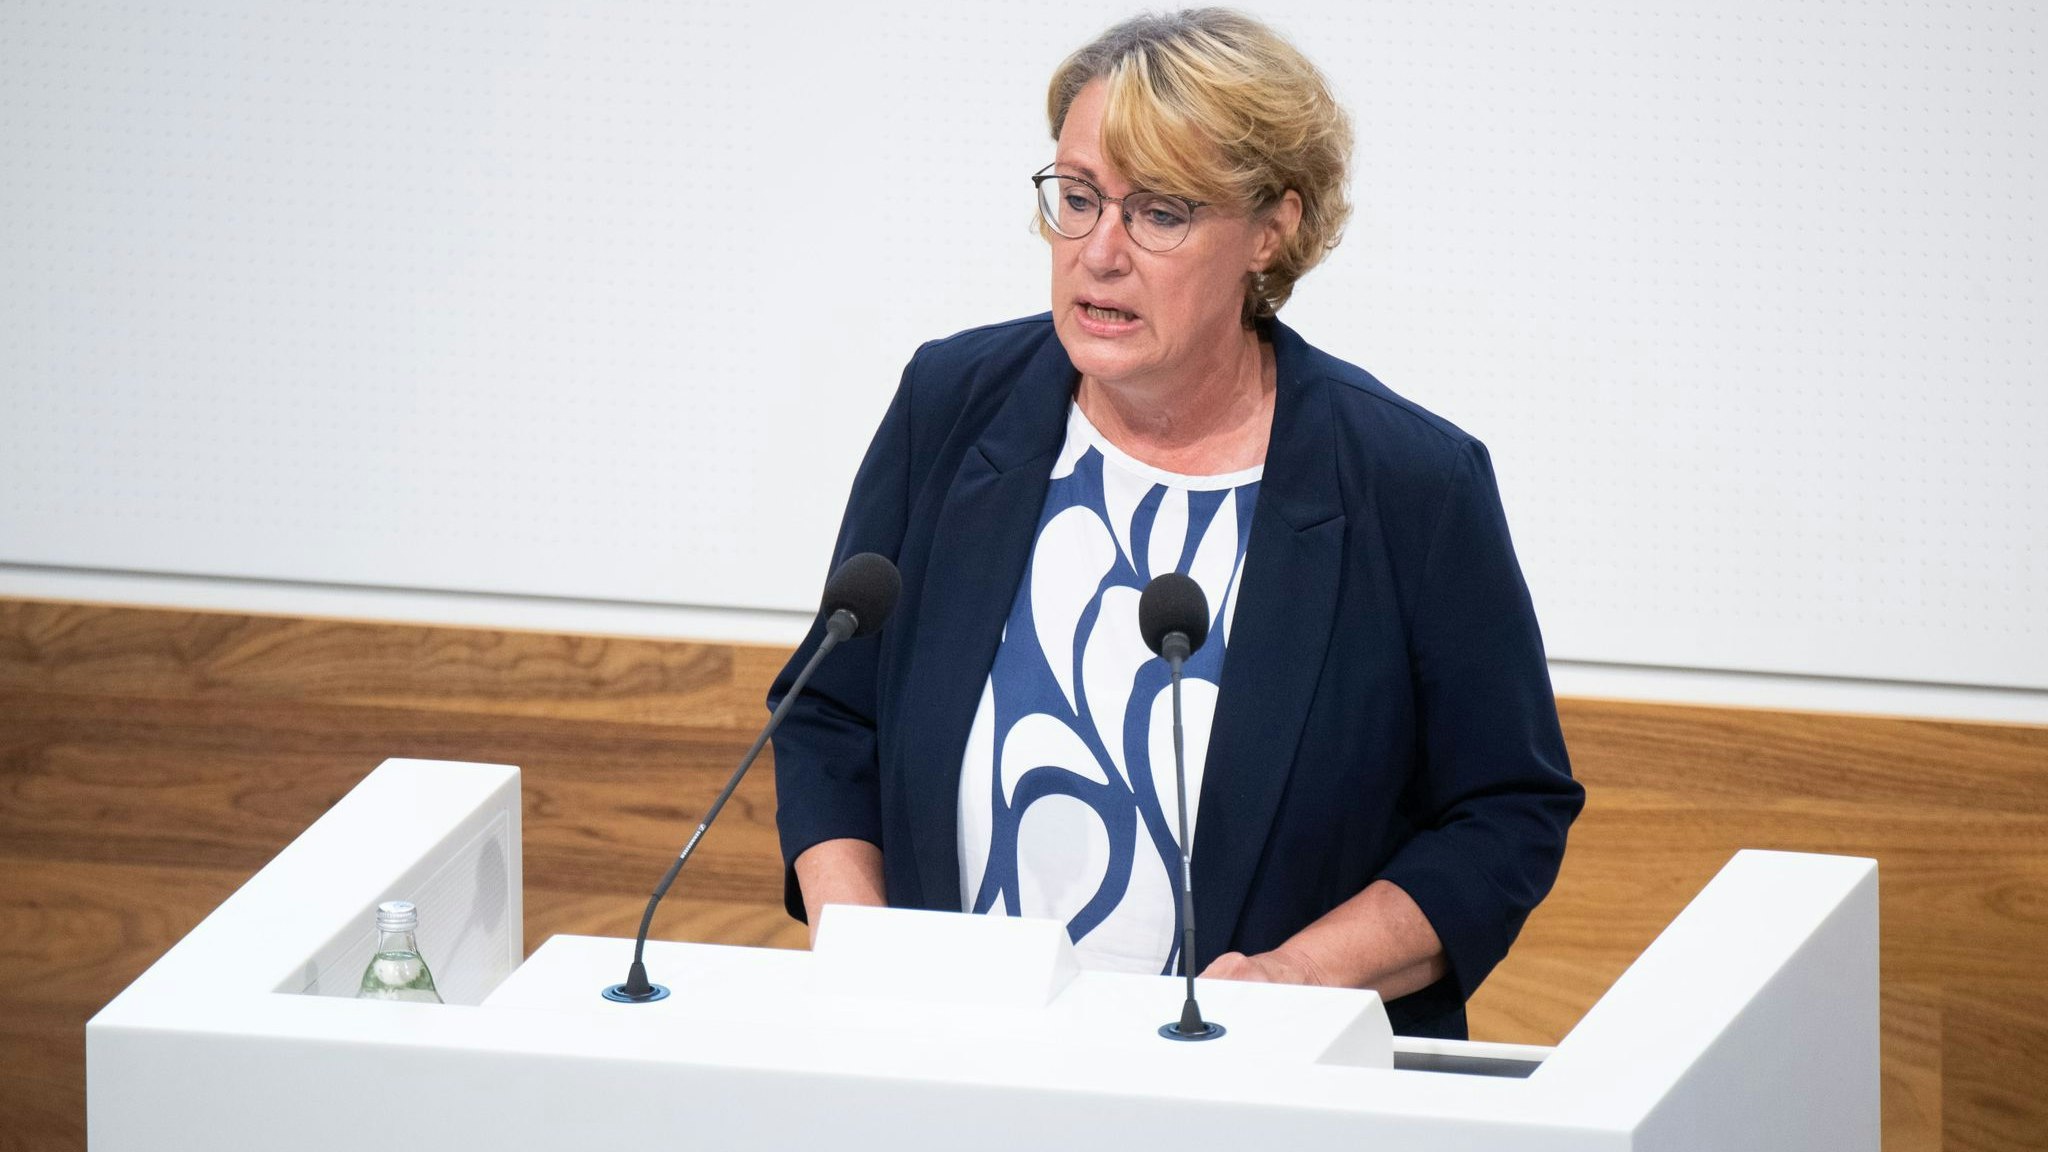 Barbara Otte-Kinast (SPD), Landwirtschaftsministerin Niedersachsen, spricht im Landtag. Foto: dpa/Stratenschulte